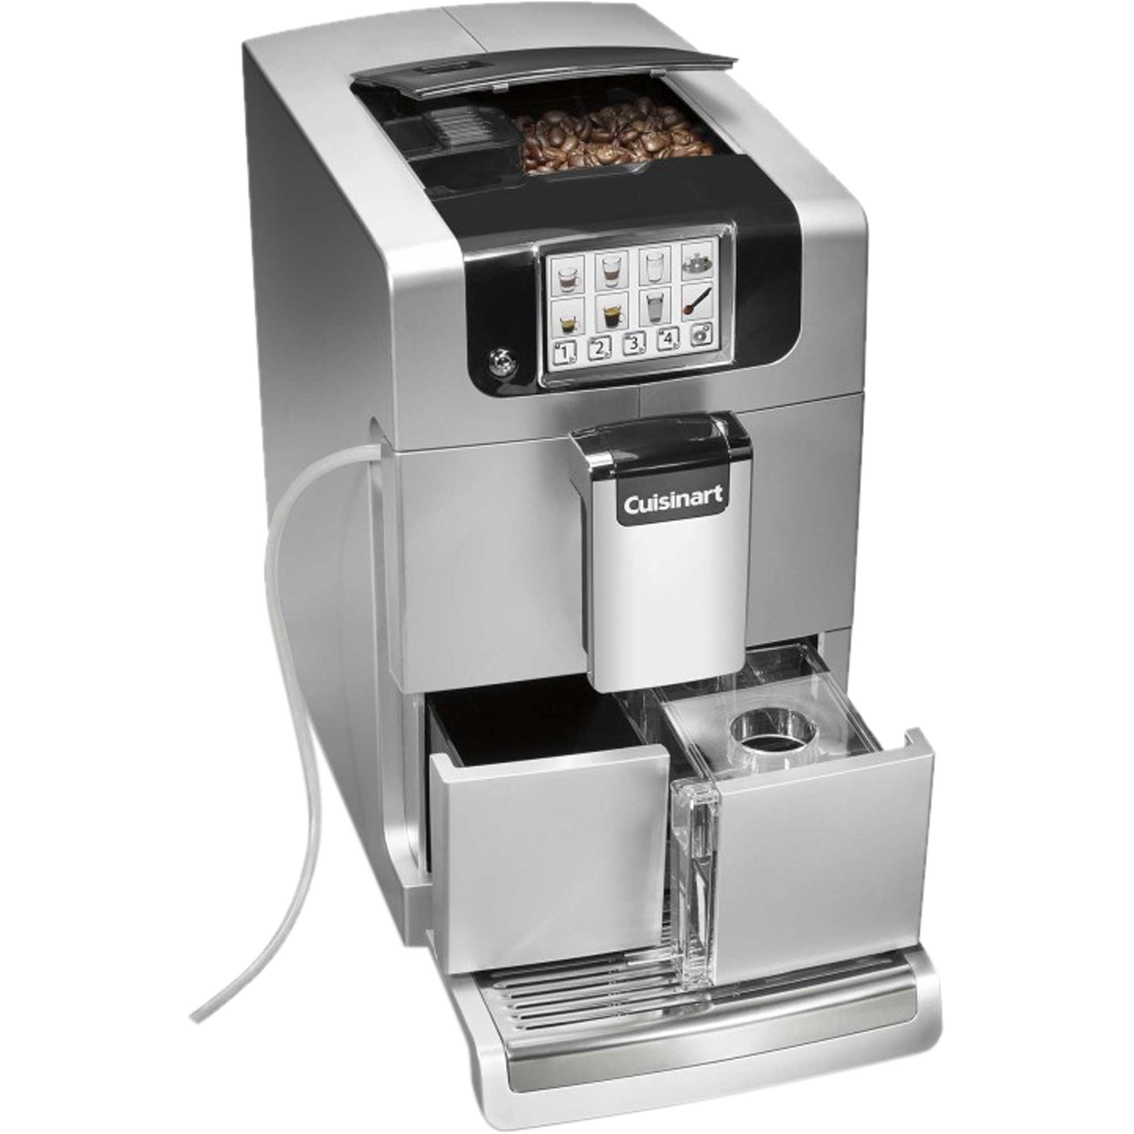 Cuisinart Espresso Defined Fully Automatic Espresso Machine - Image 2 of 4